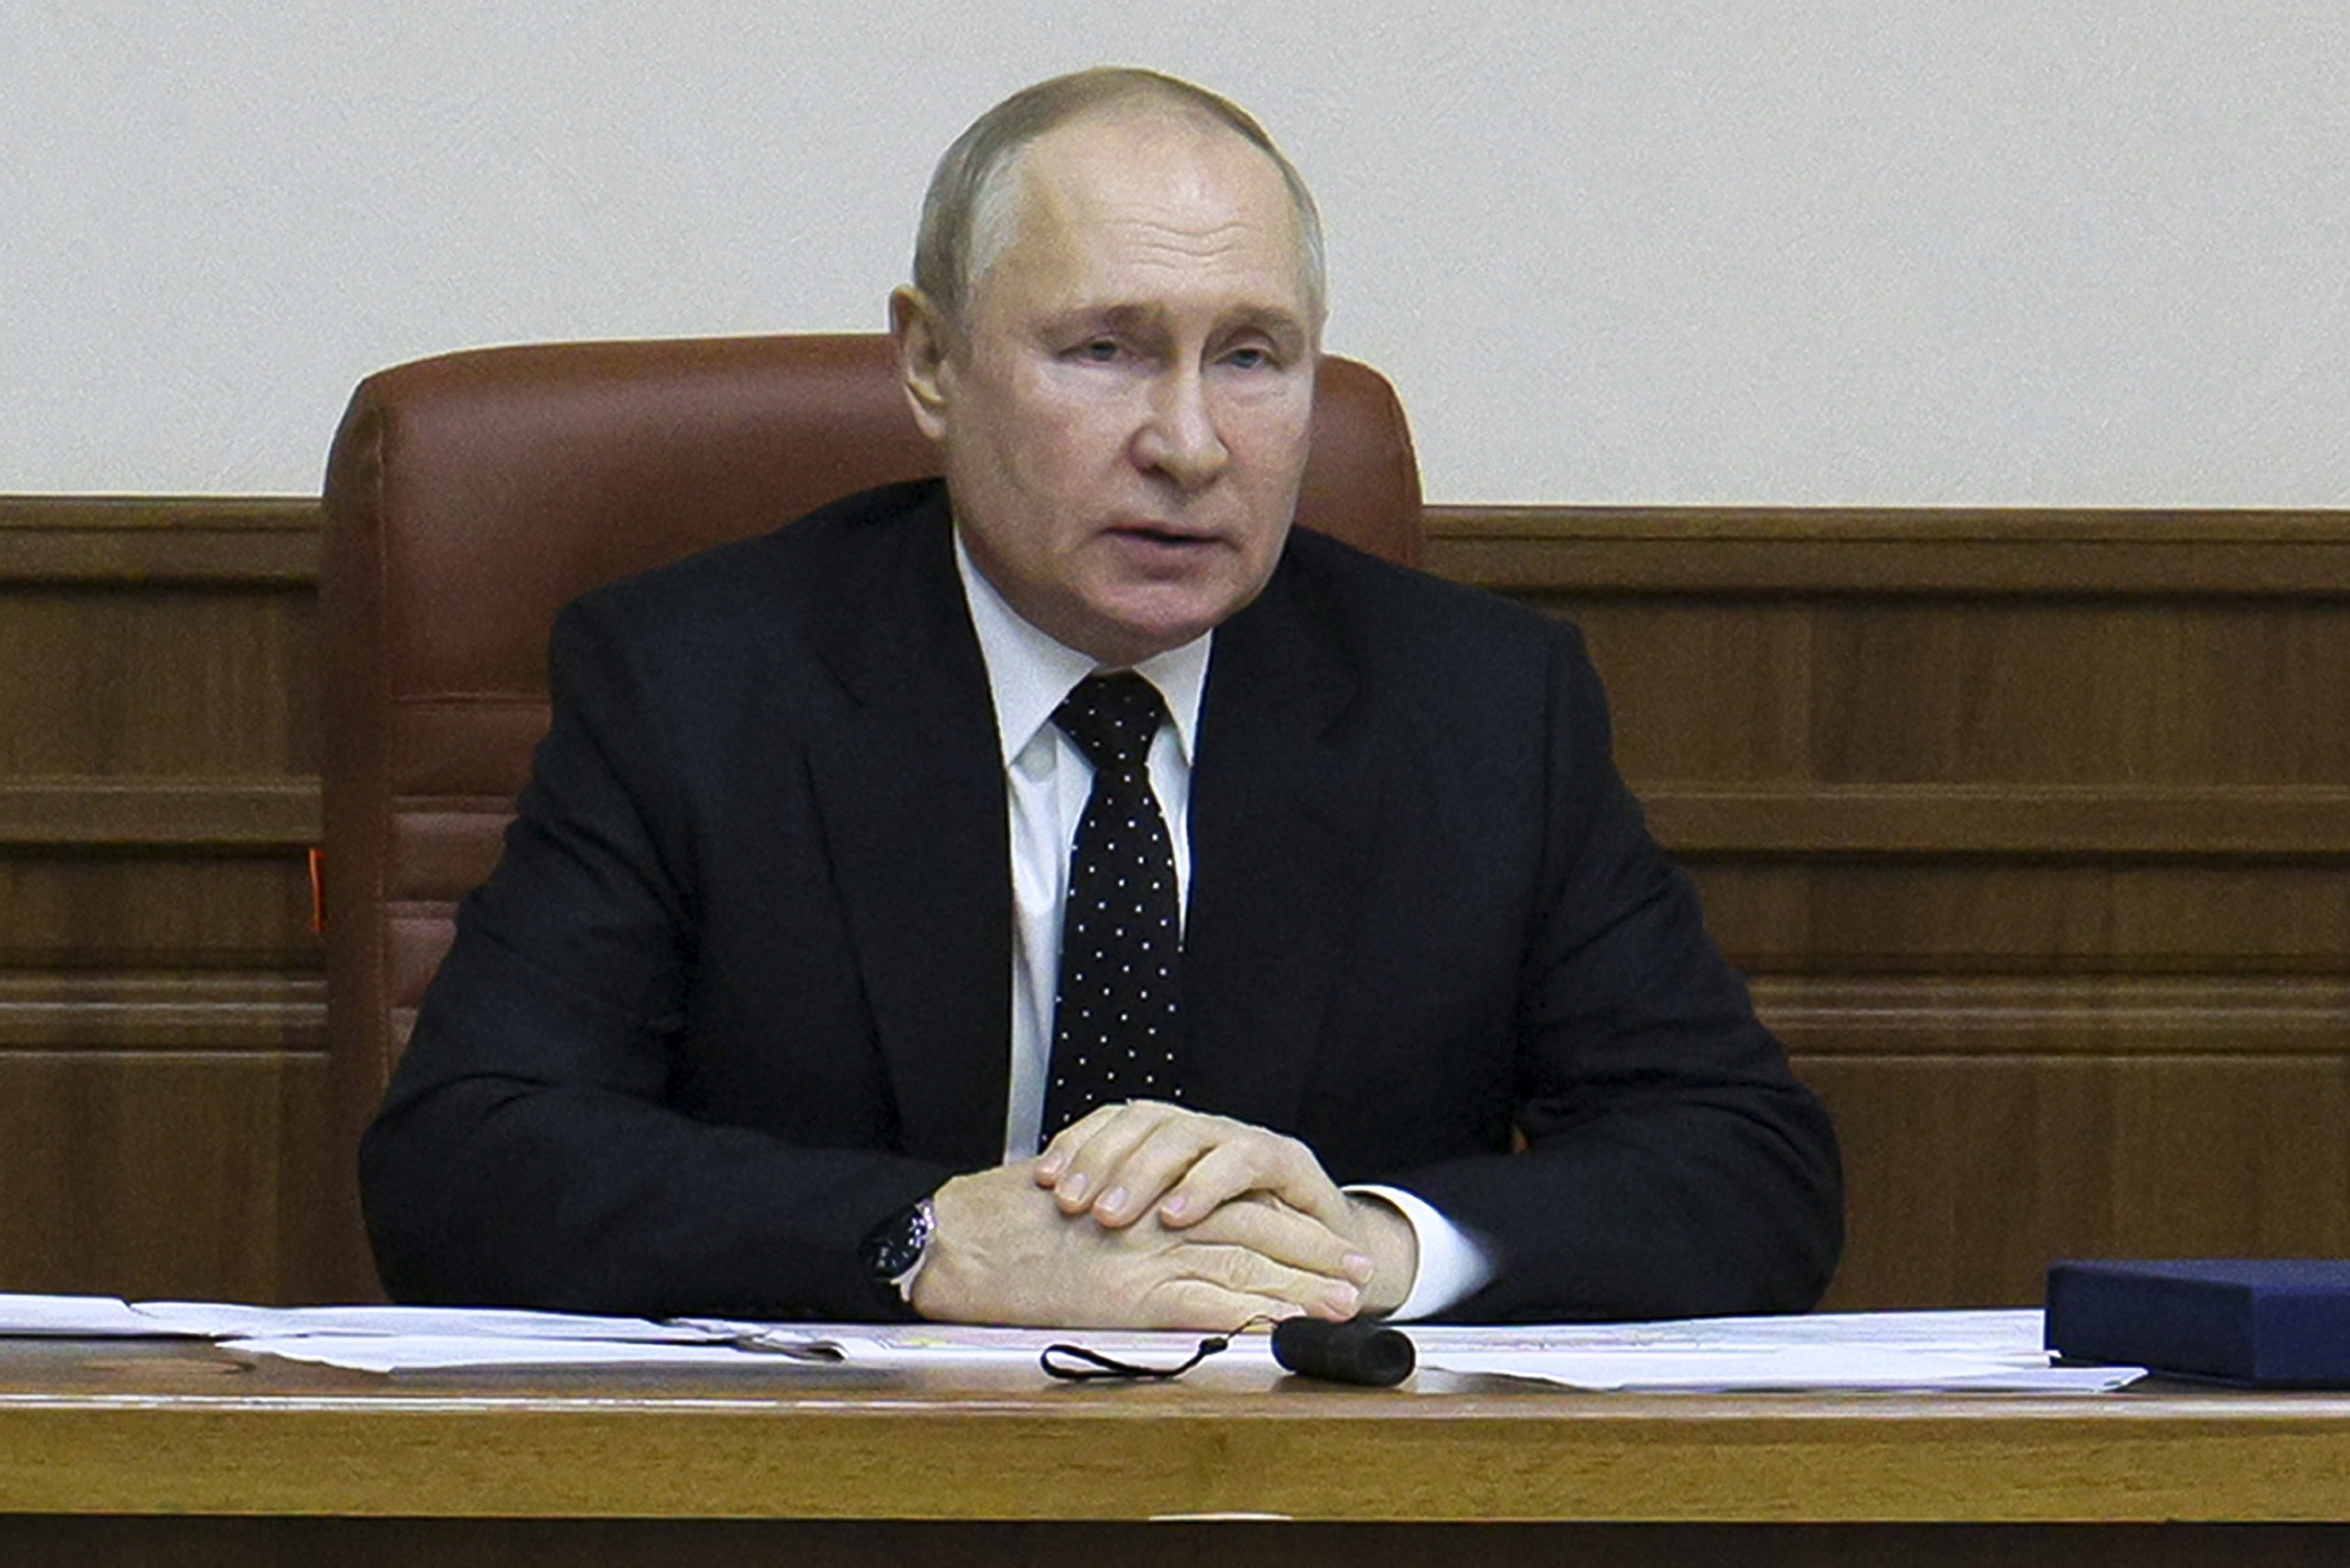 Ρωσικά ΜΜΕ: Αναμένεται σημαντική ανακοίνωση Πούτιν την ερχόμενη εβδομάδα